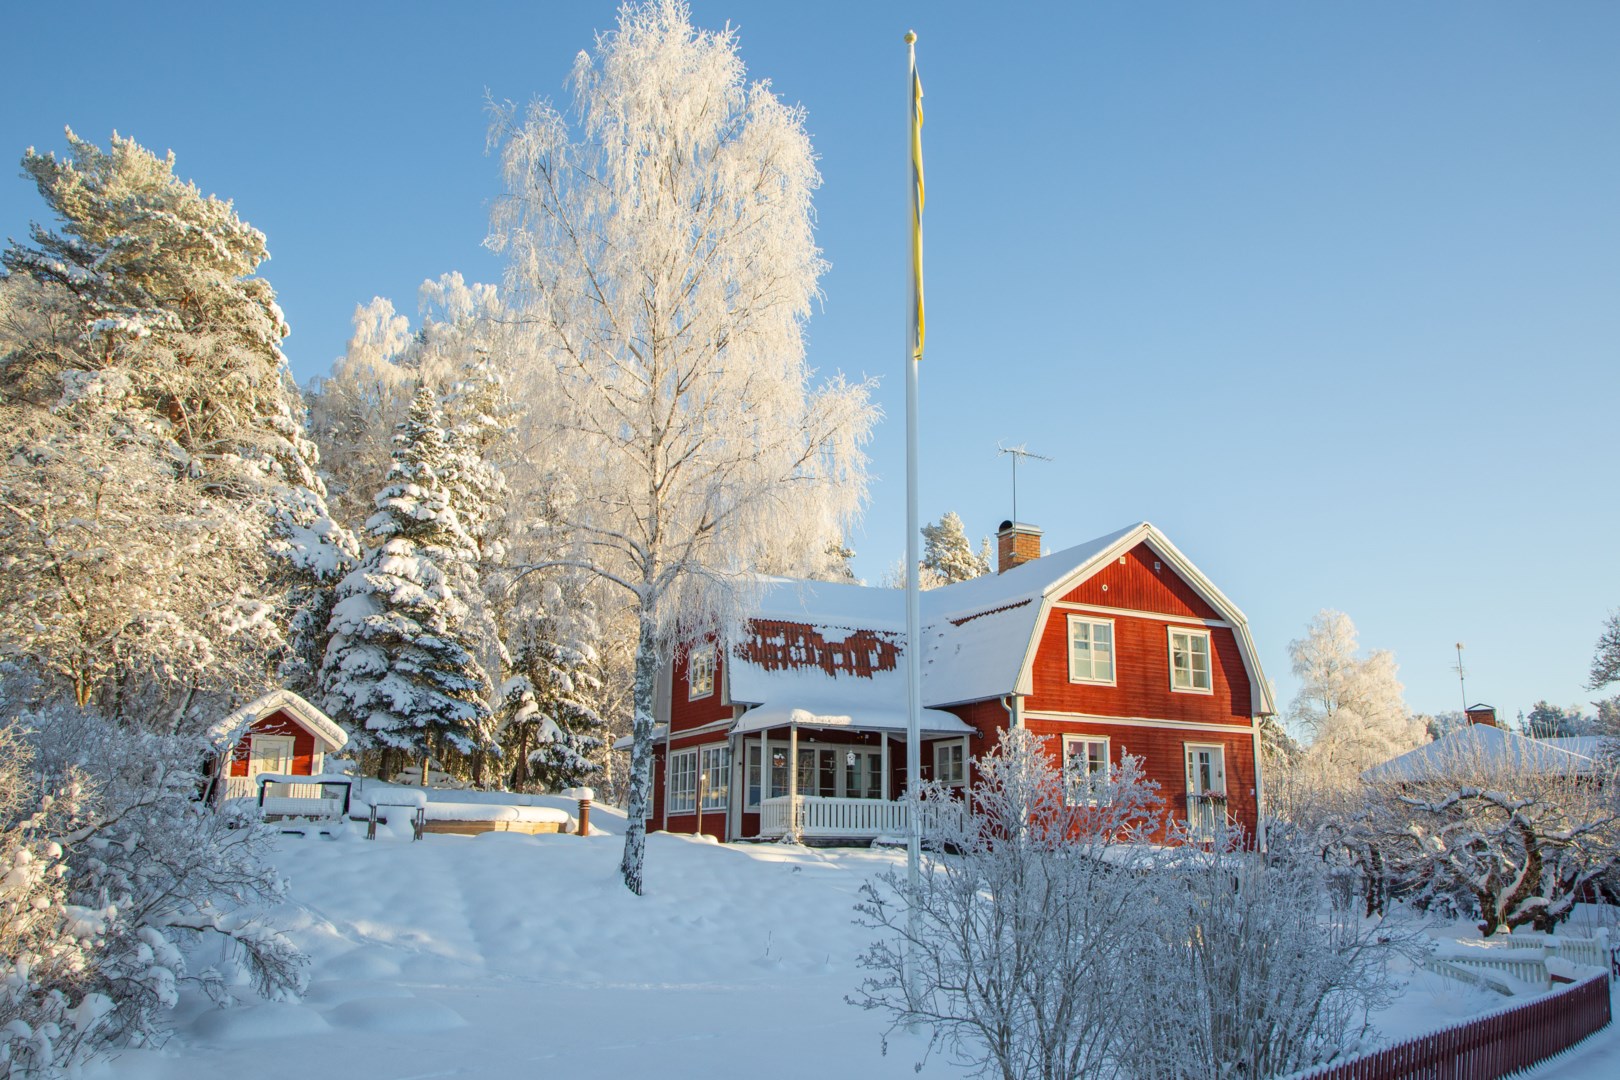 Bostadsbild från Skärtomtsvägen 3, Såld i Vattholma, Uppsala